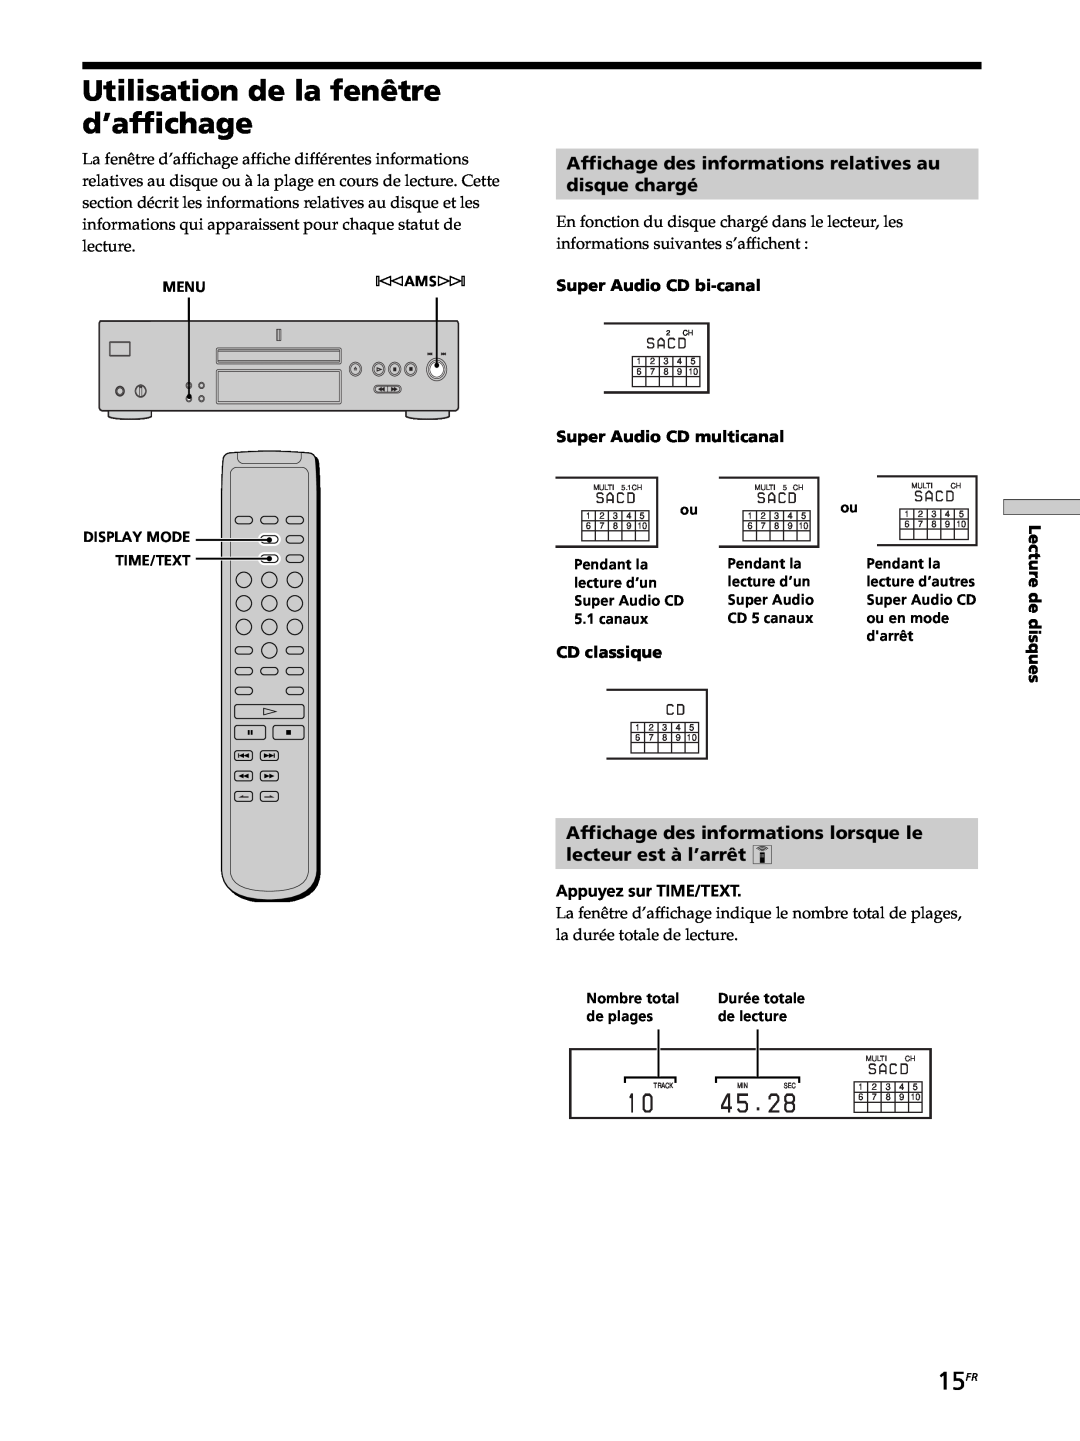 Sony SCD-XB770 Utilisation de la fenêtre d’affichage, 15FR, Affichage des informations relatives au, disque chargé 